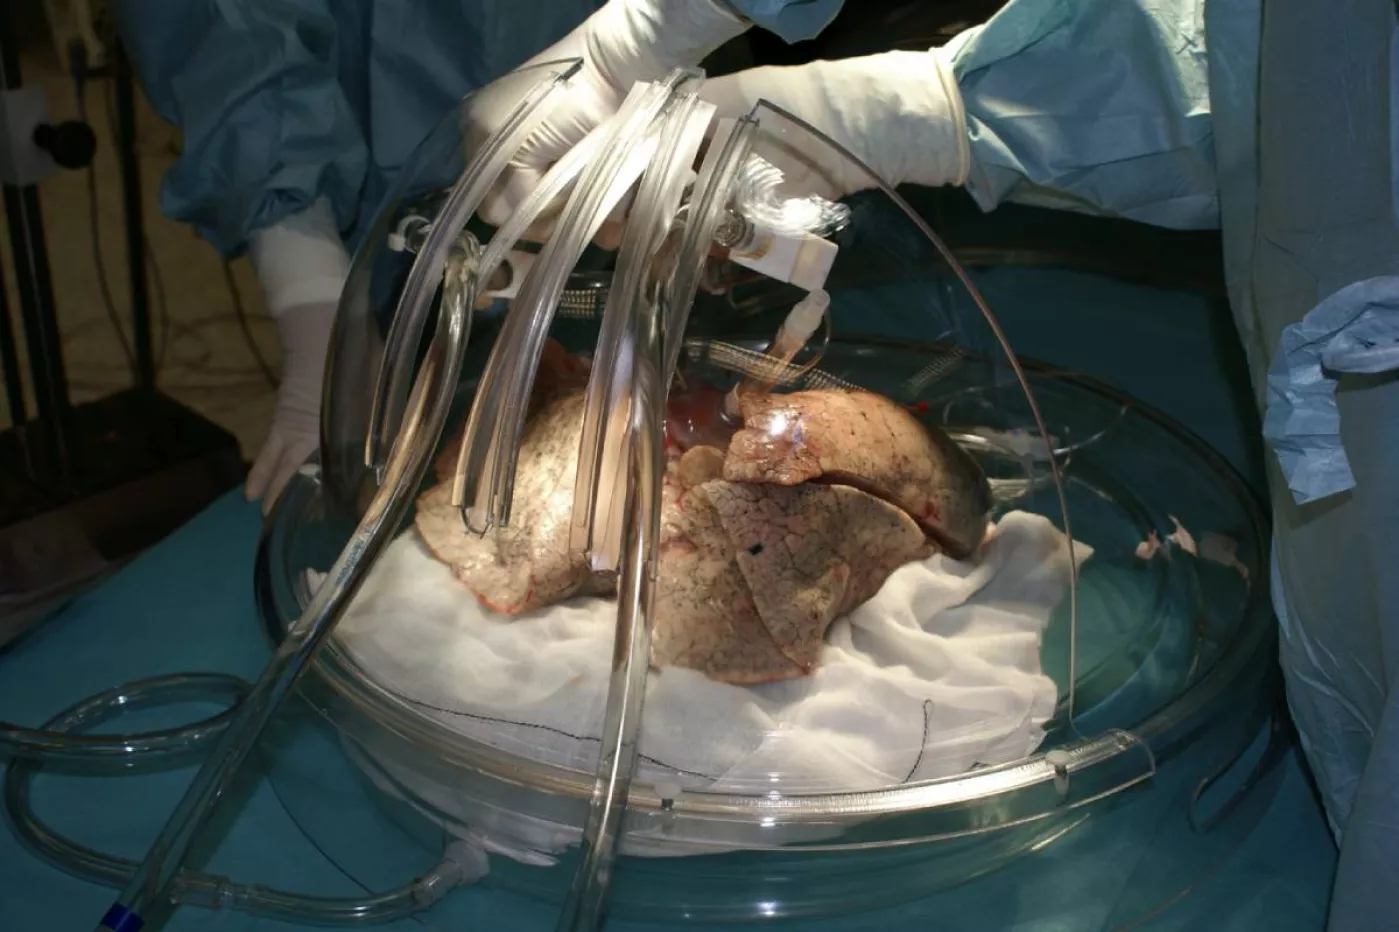 Introducción de los pulmones en una caja estéril para un trasplante bipulmonar. Foto: MAURICIO SKRYCKY.